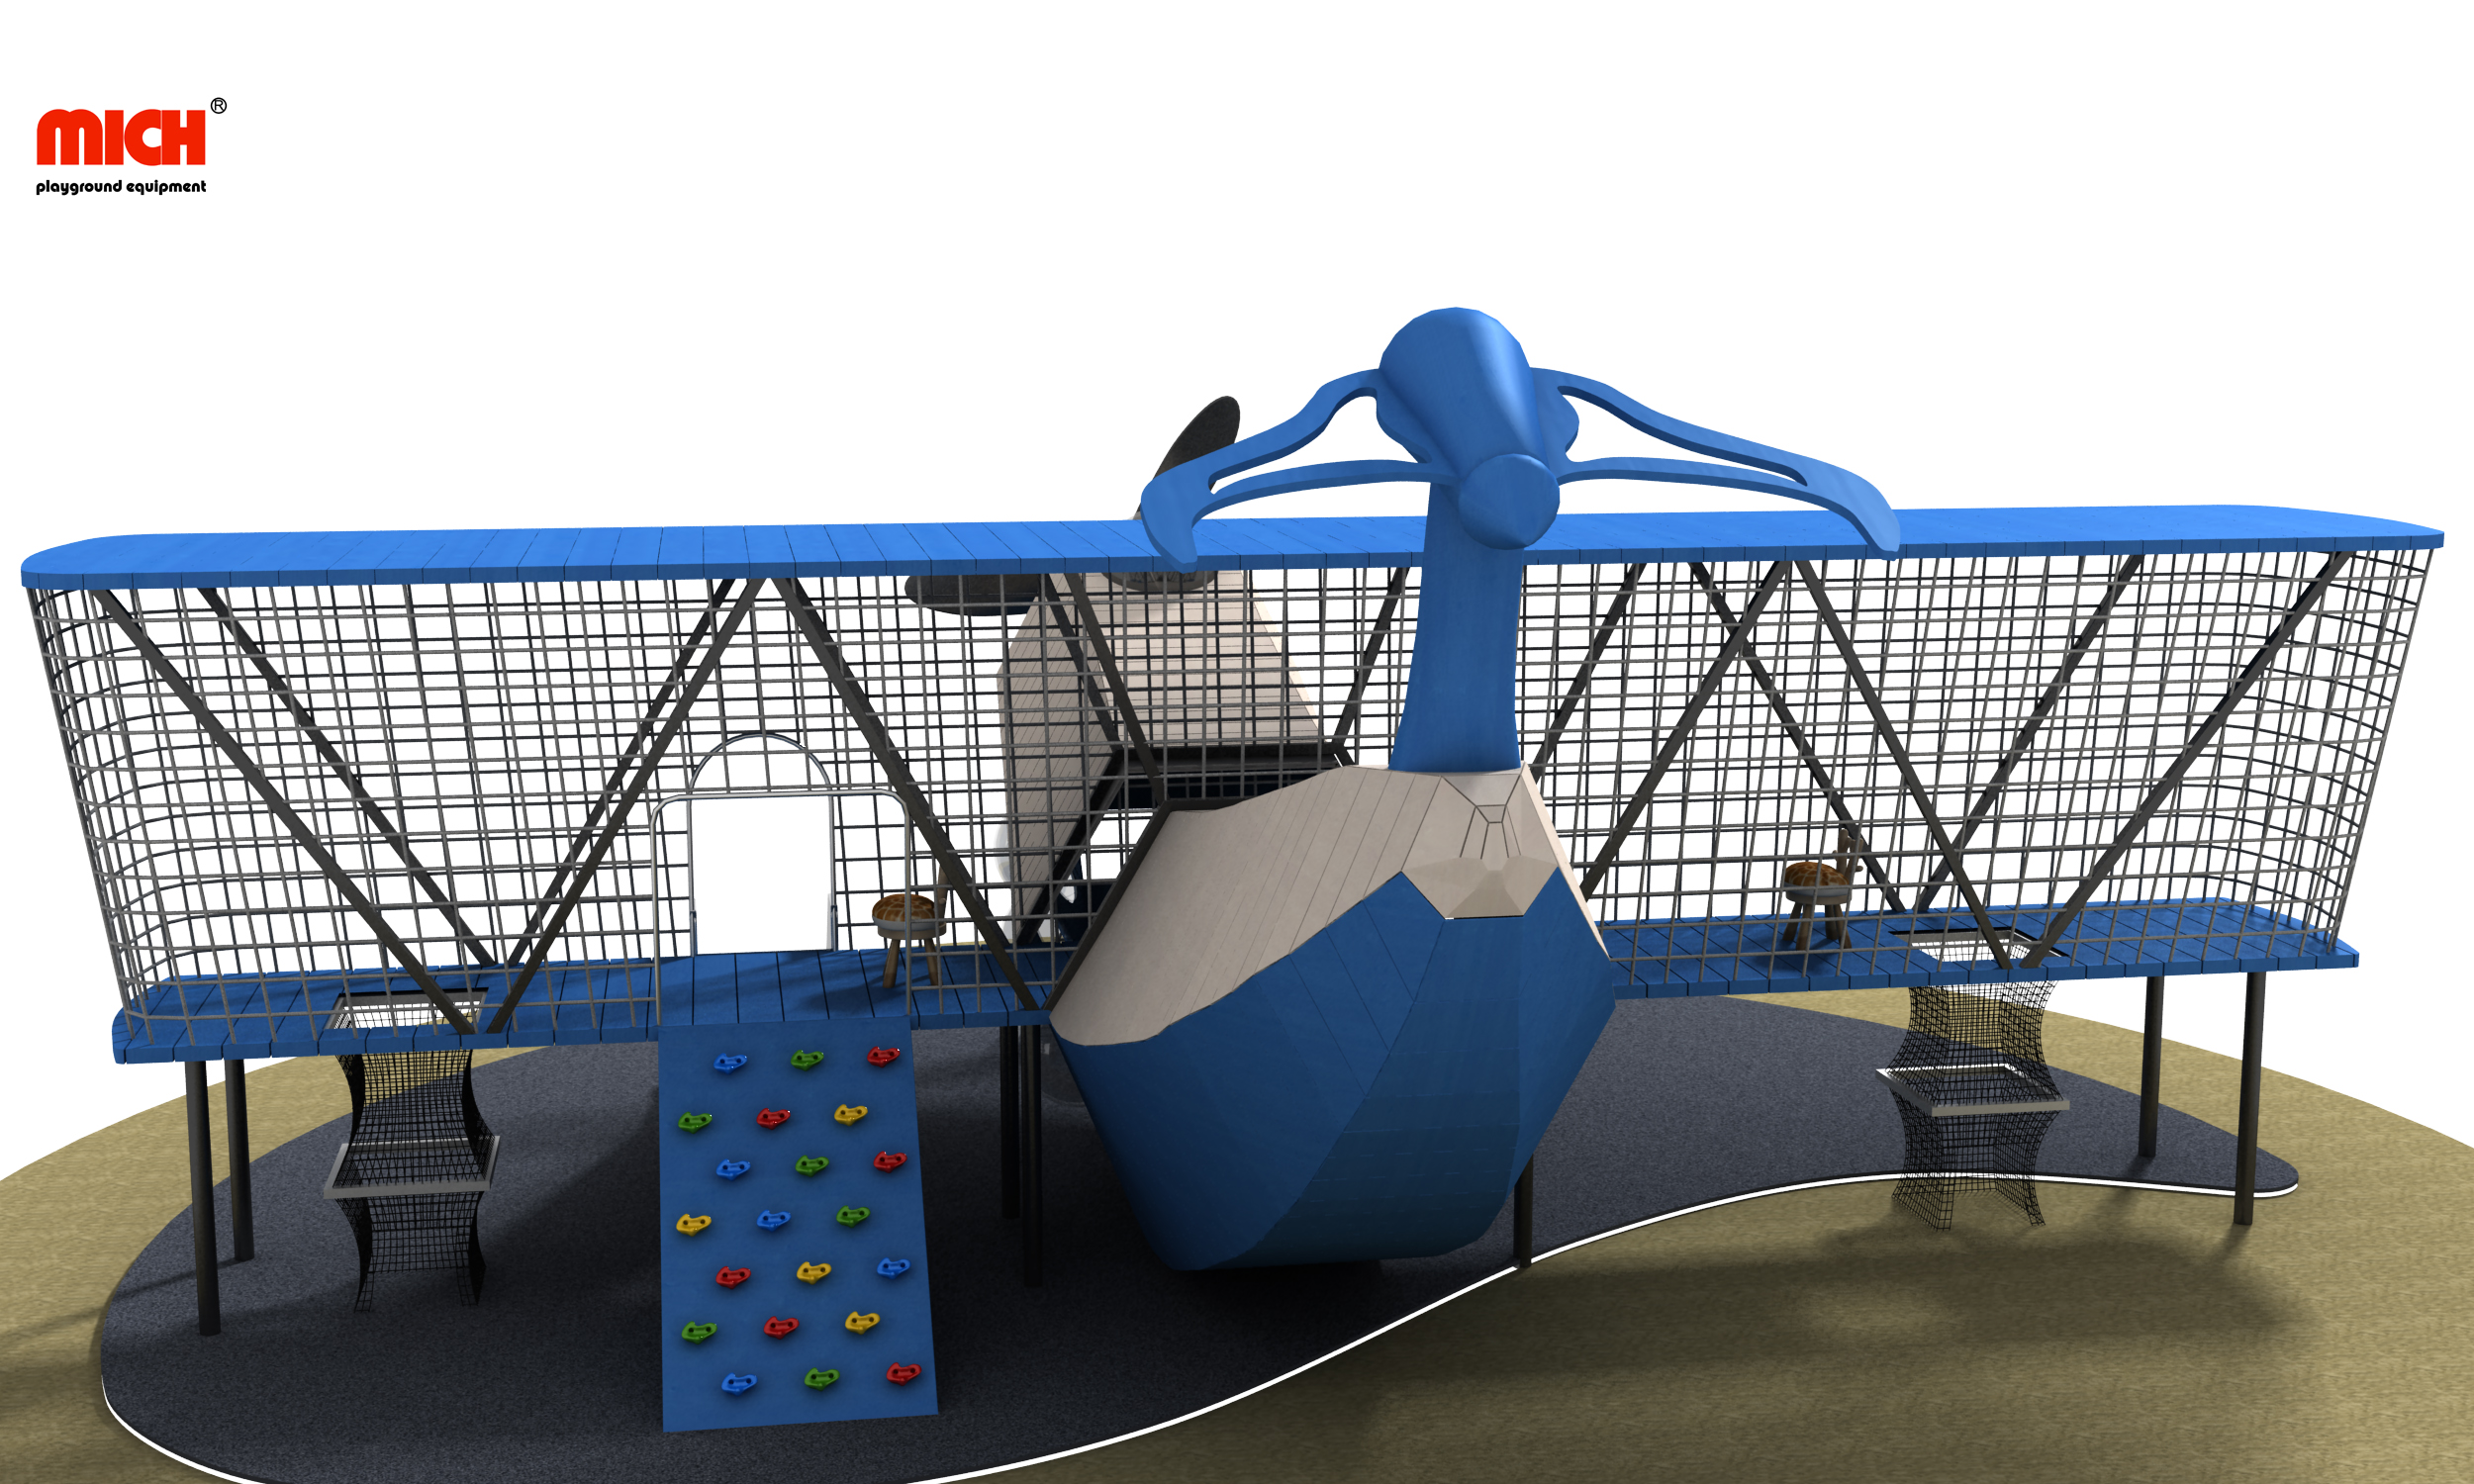 Aire de jeux de plein air en forme d'avion pour enfants modernes